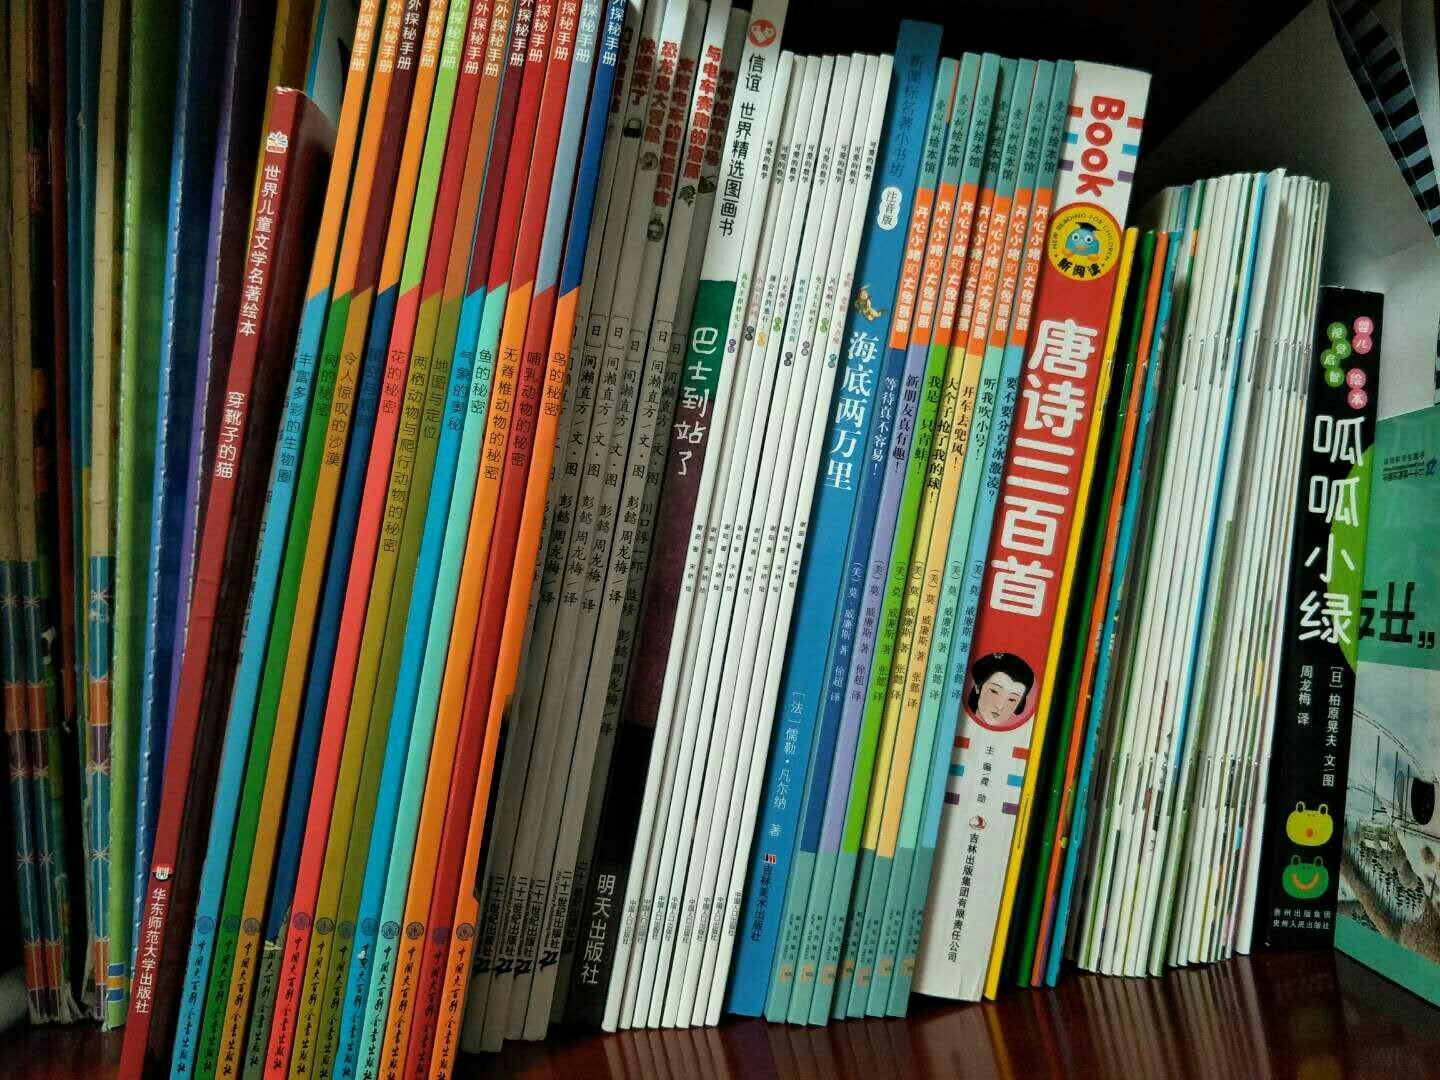 一直在给孩子买的书，图书纸张质量好，色彩鲜艳！